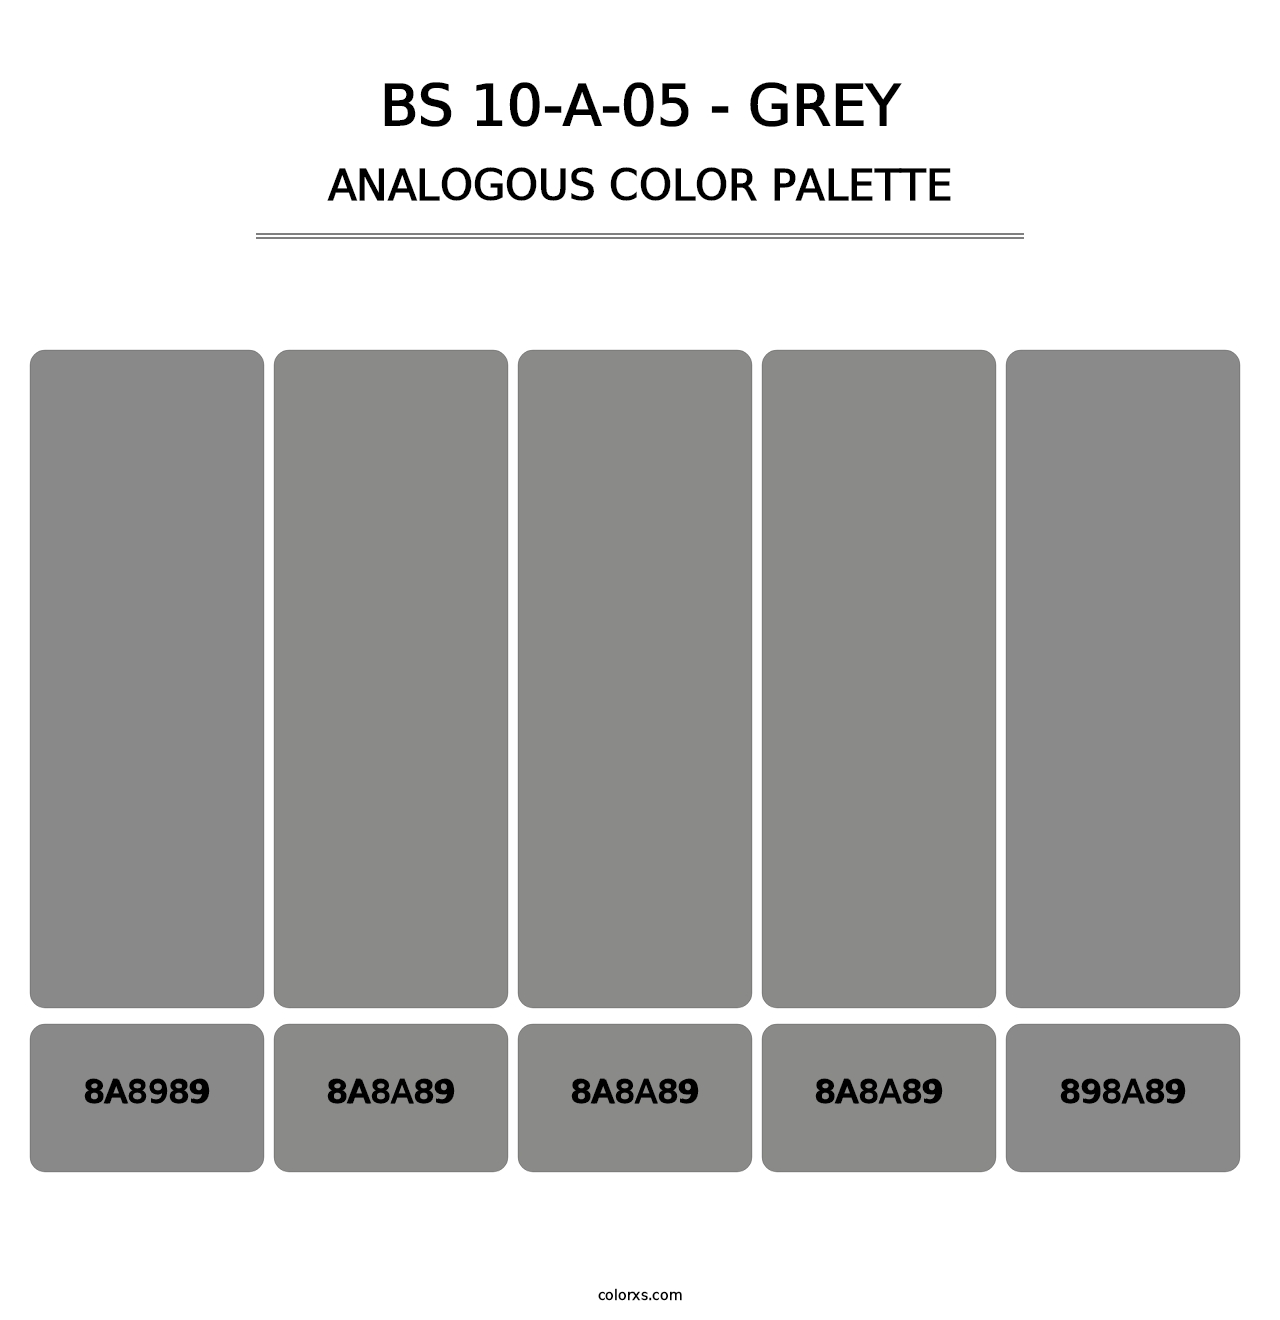 BS 10-A-05 - Grey - Analogous Color Palette